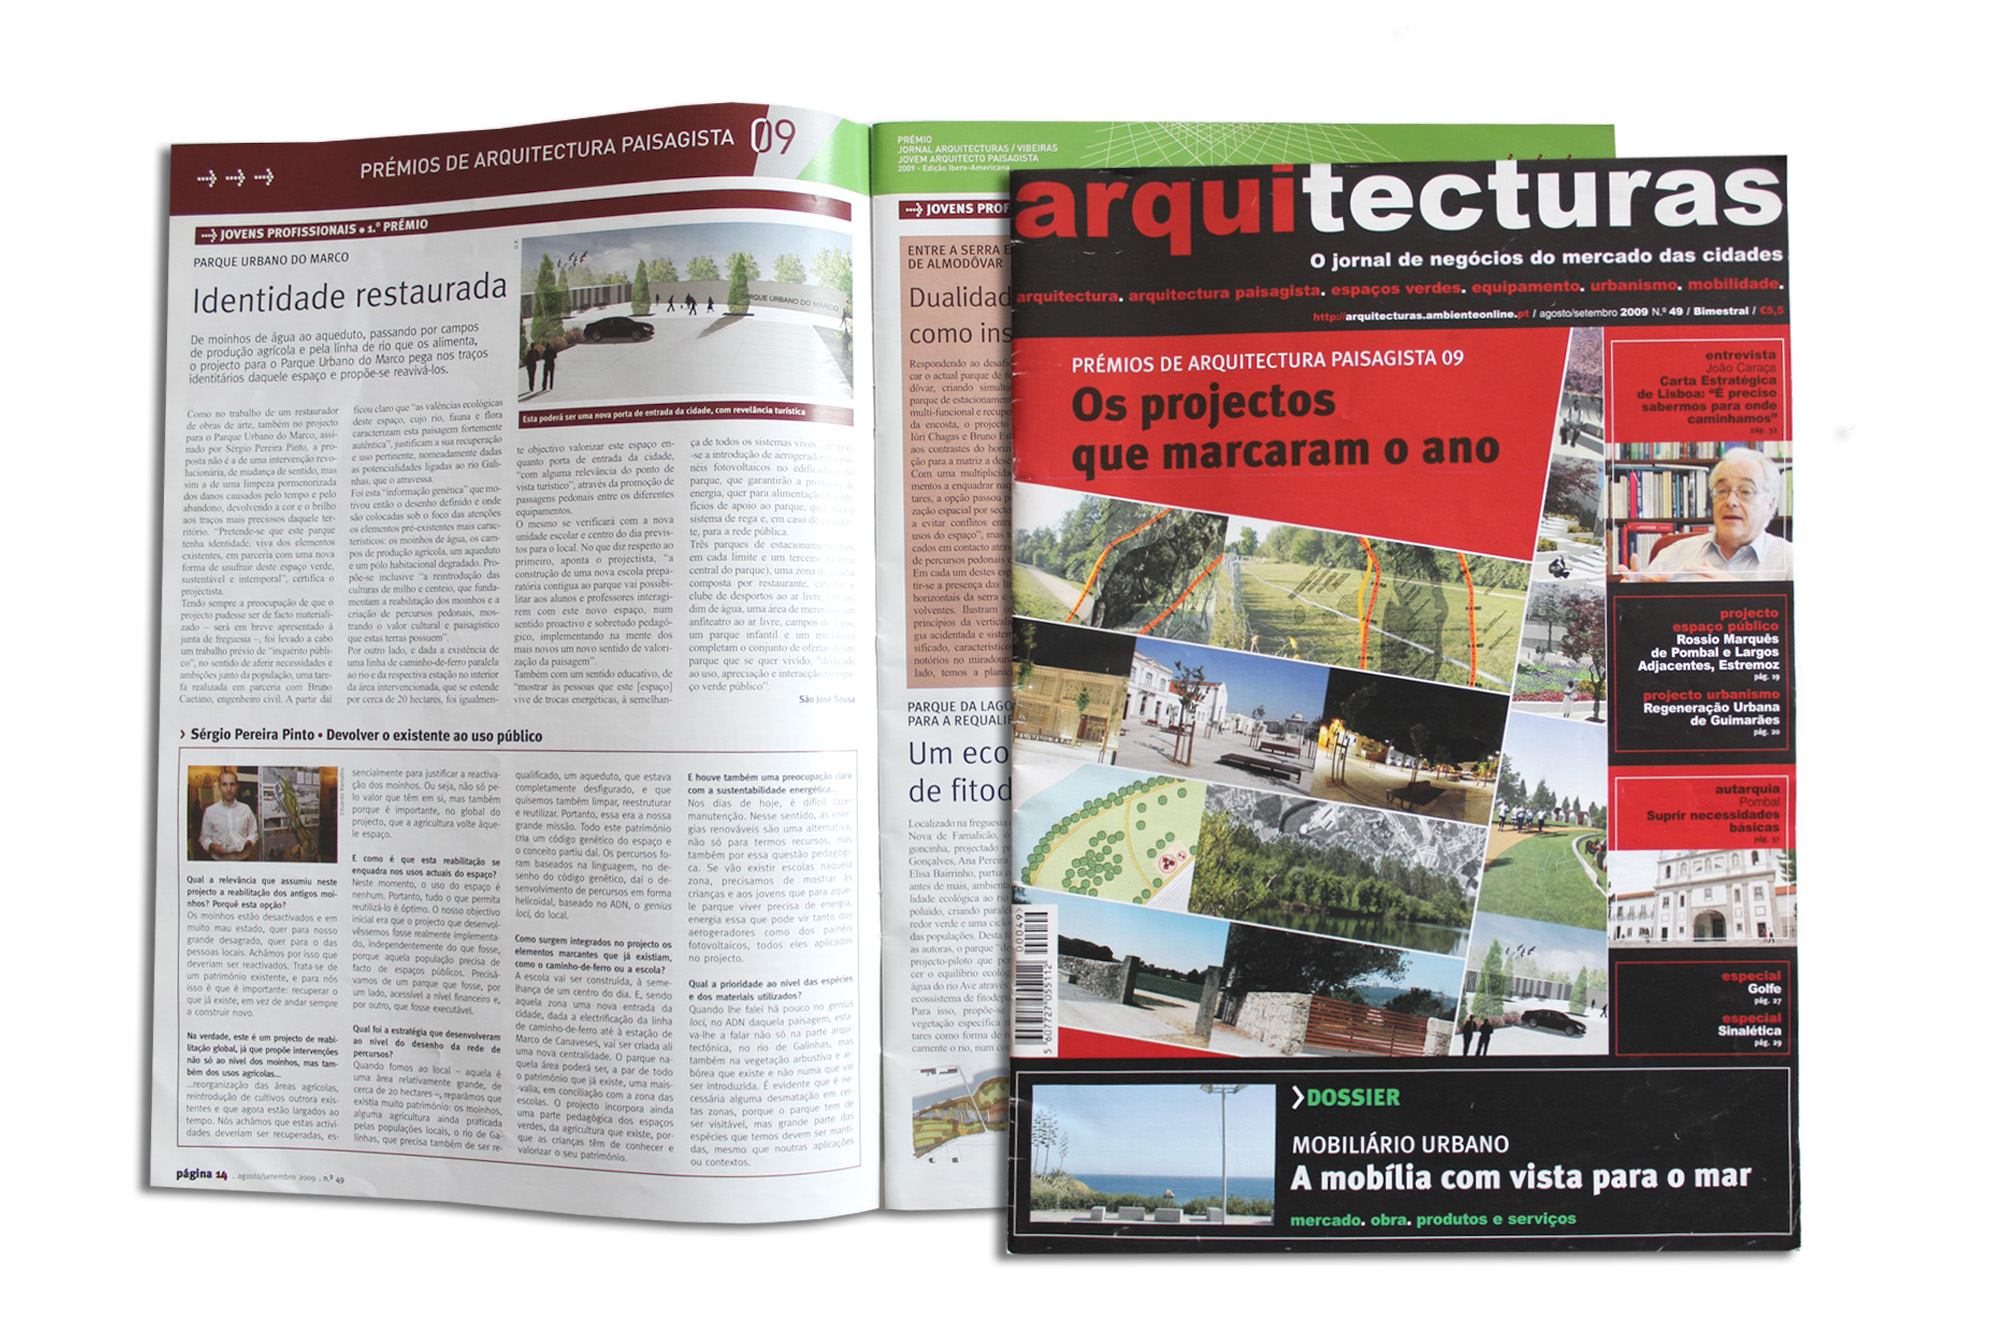 Sérgio Pinto Arquitetura Paisagista e Desenho Urbano Landscape Architecture & Urban Design prémio JORNAL ARQUITETURAS award